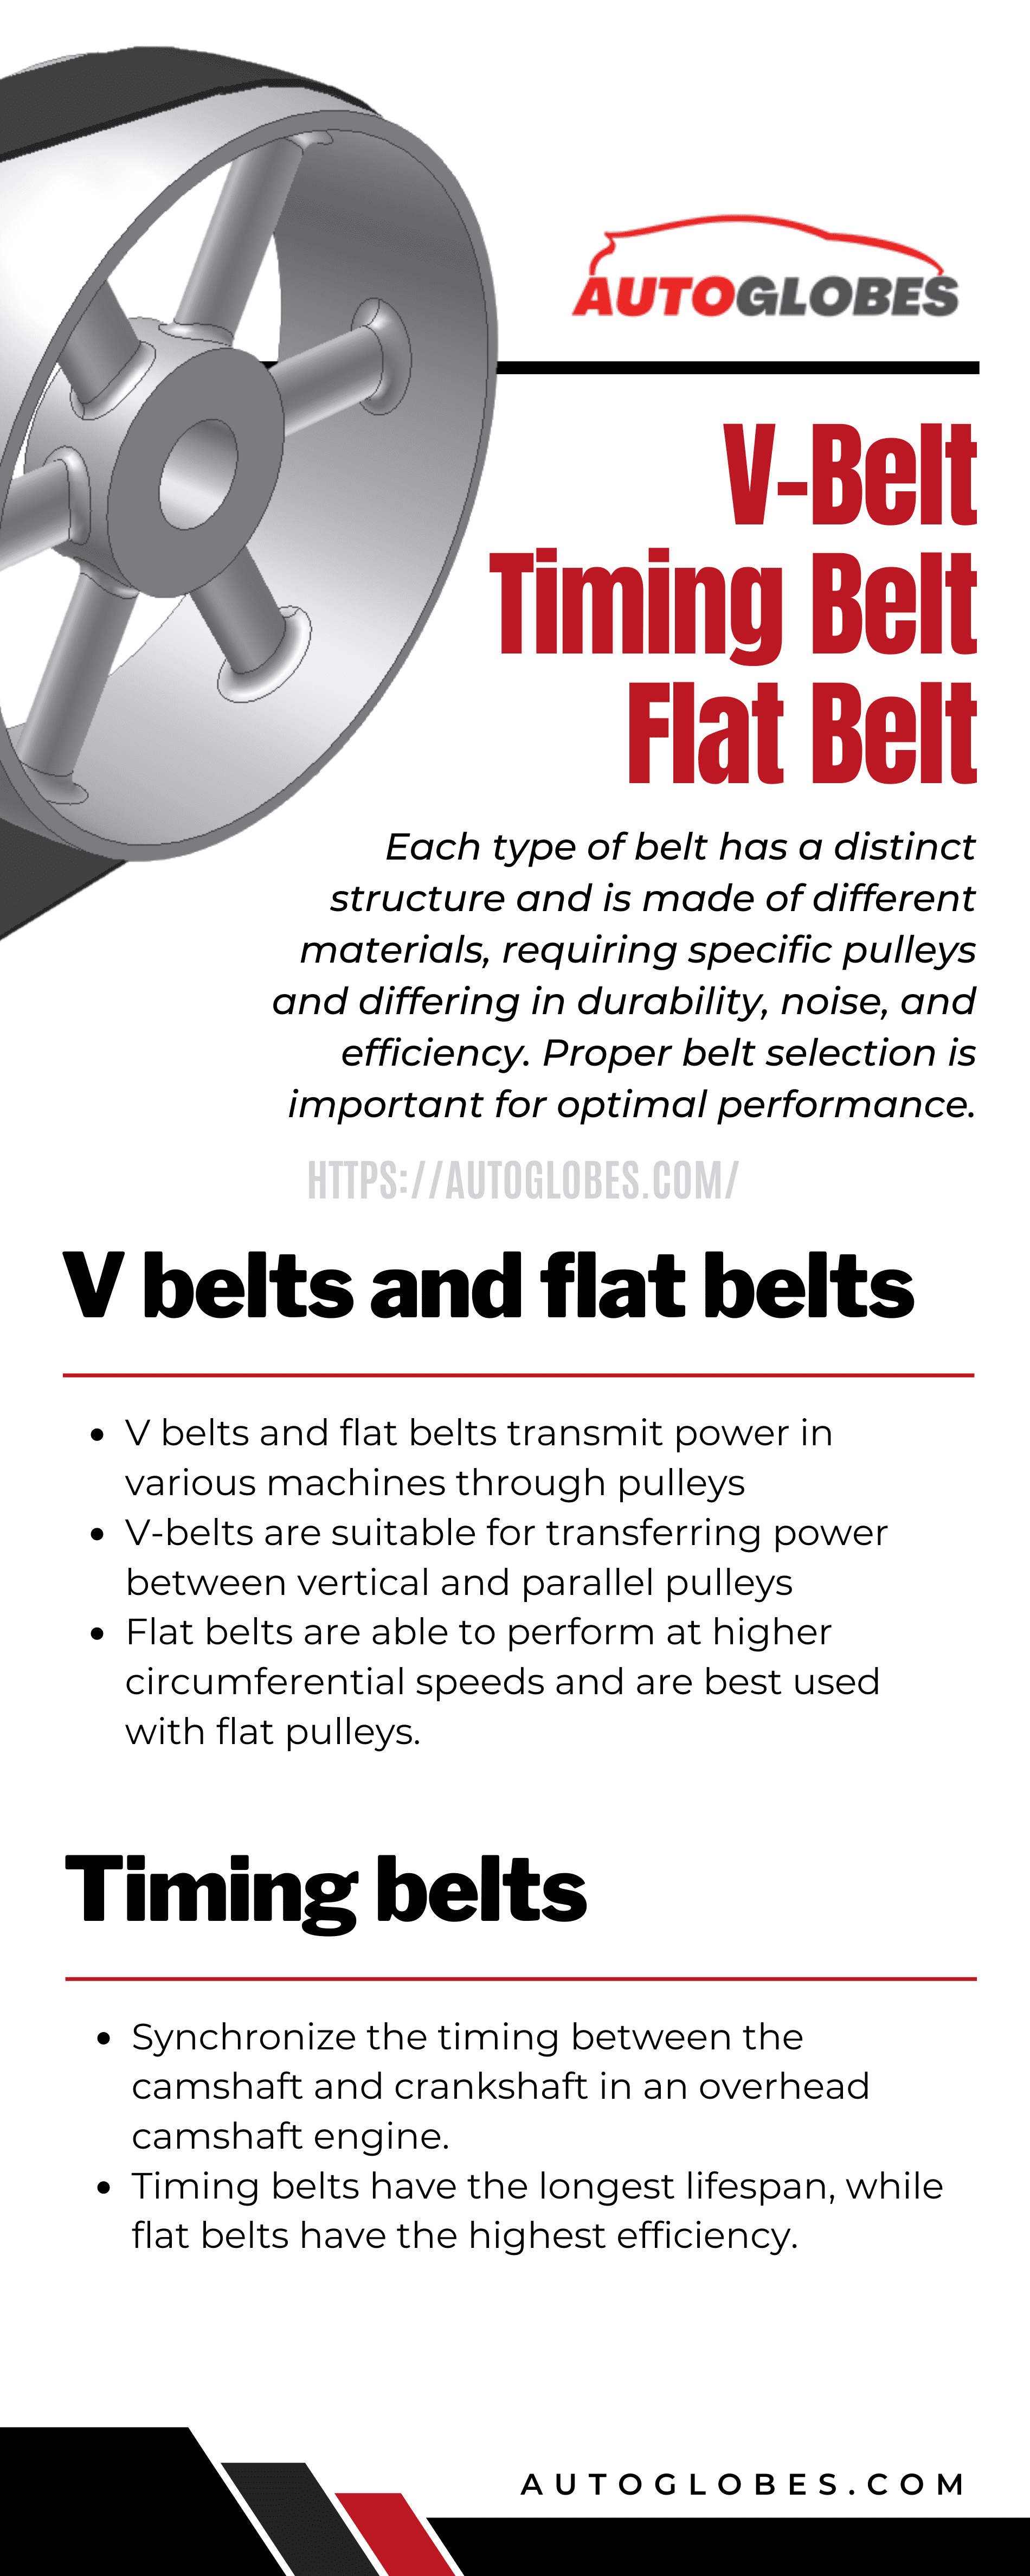 V-Belt Timing Belt Flat Belt Infographic